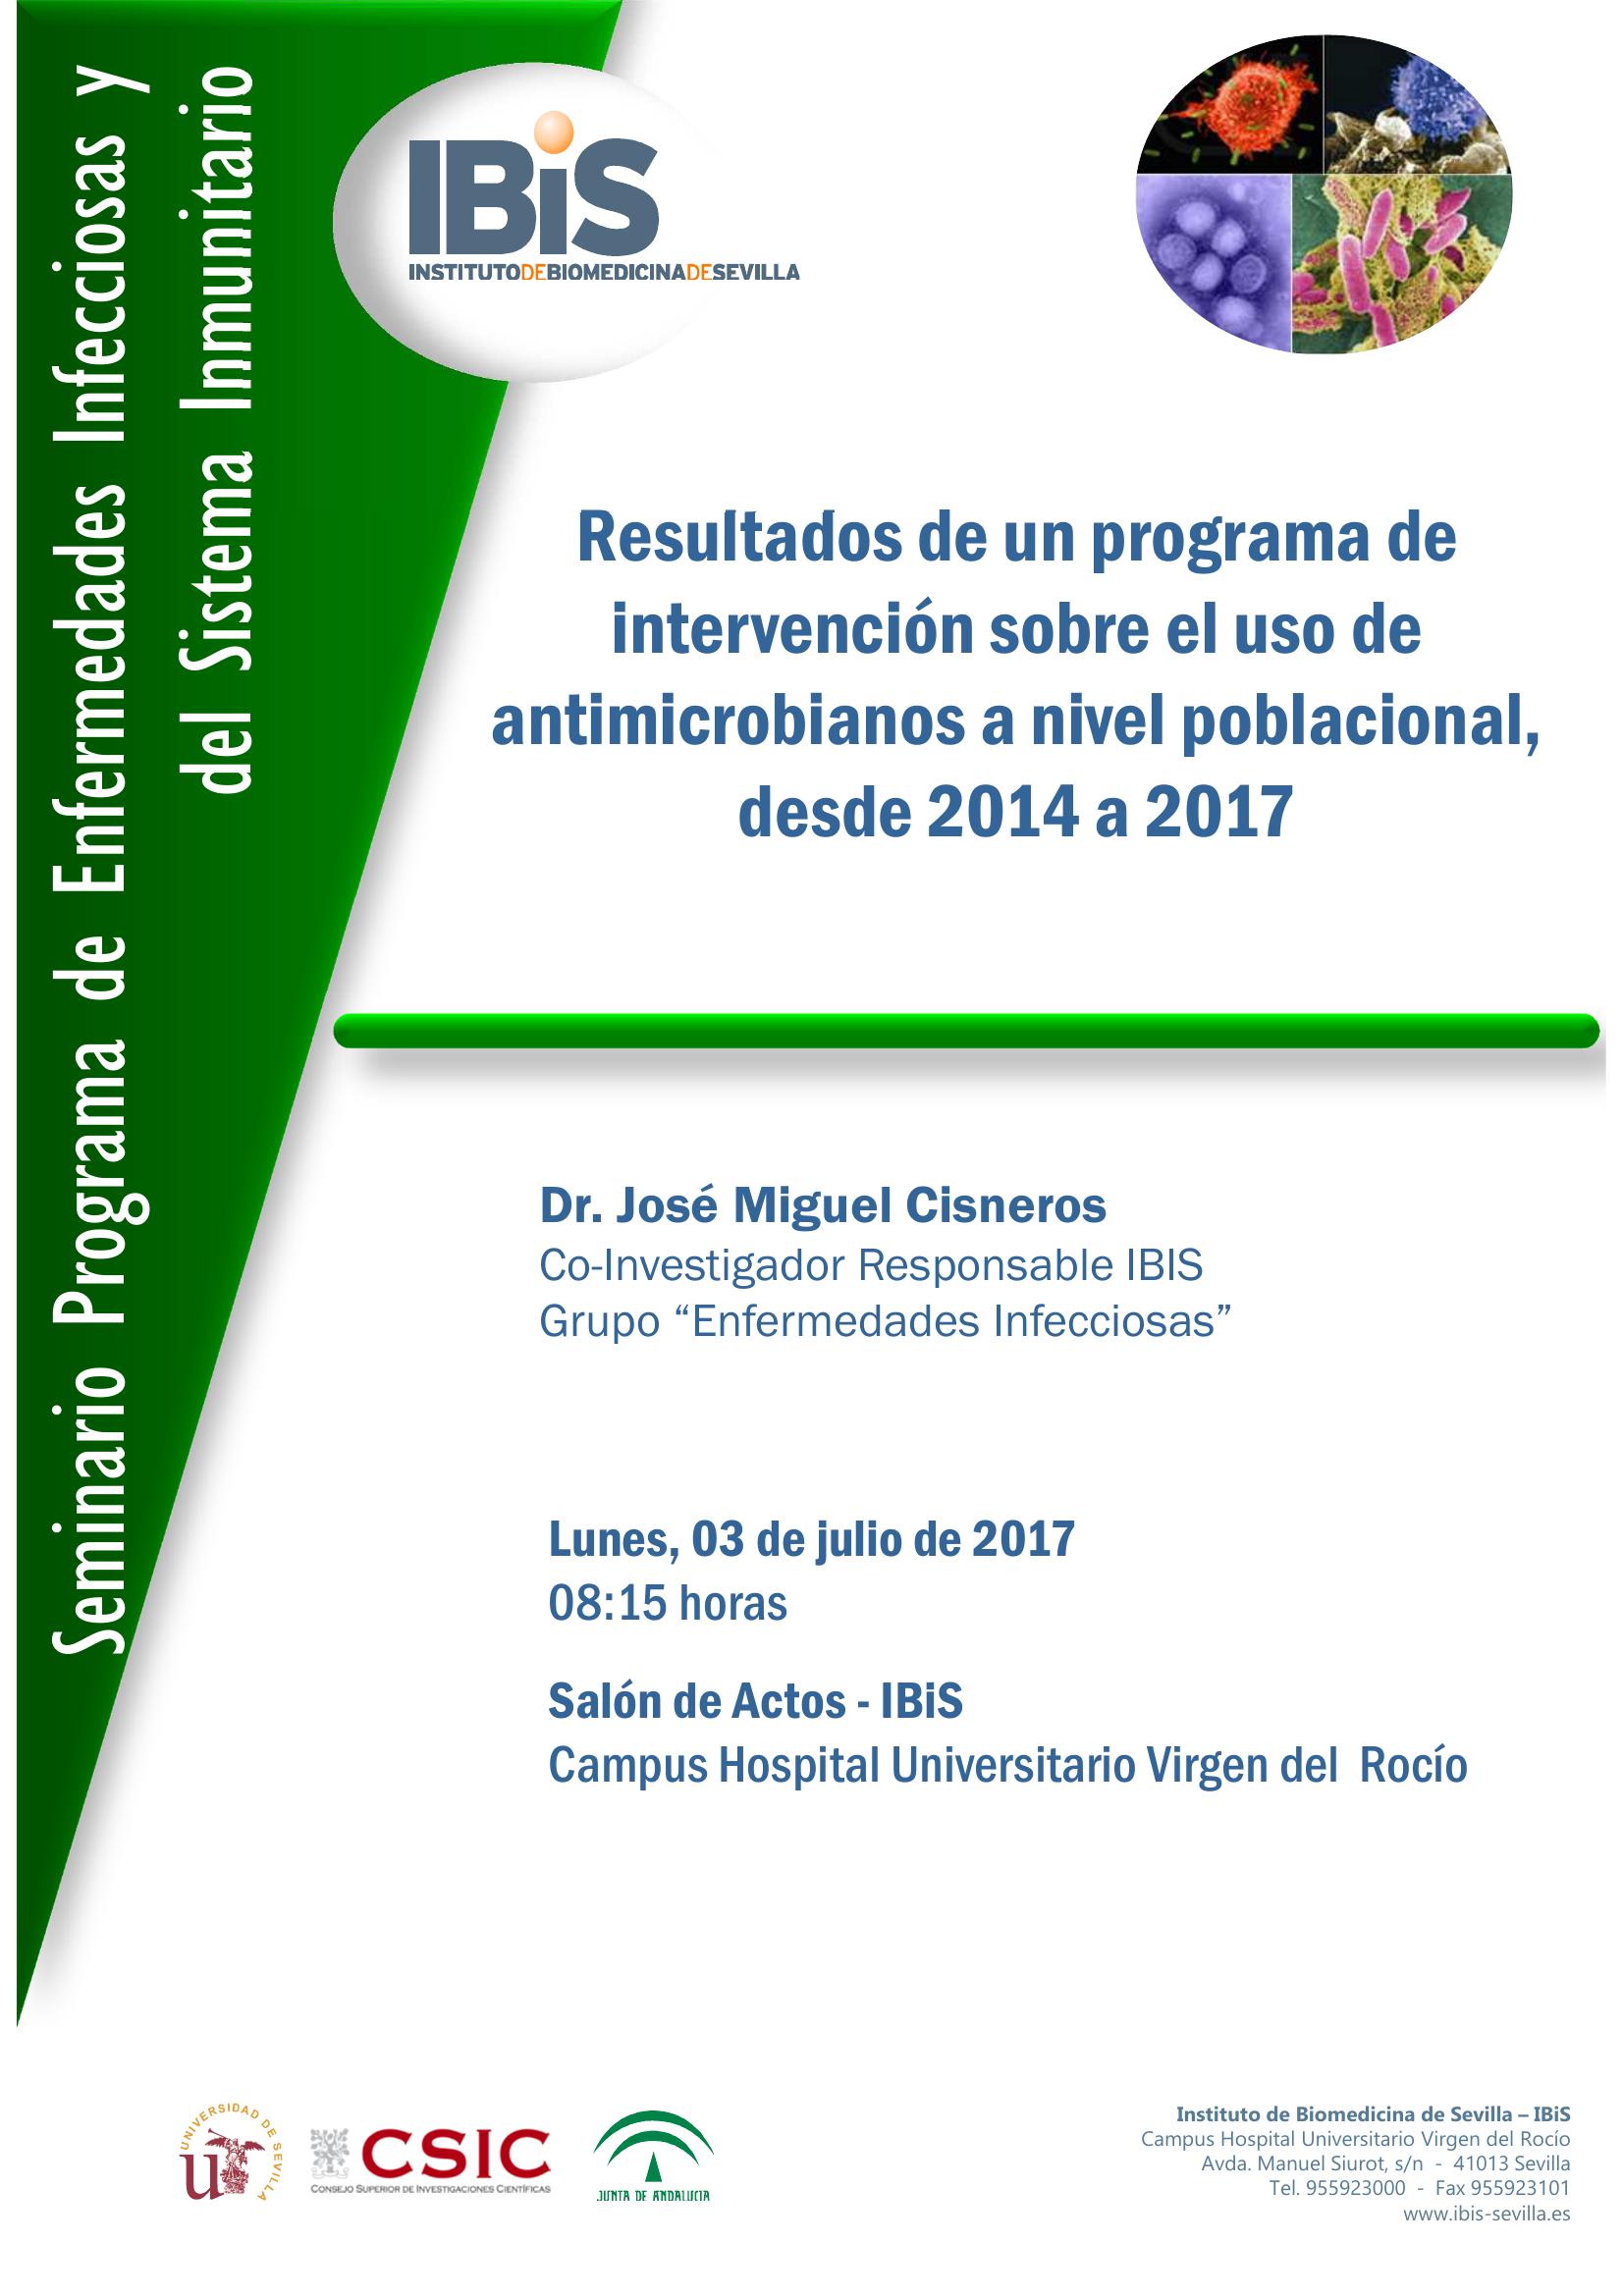 Poster: Resultados de un programa de intervención sobre el uso de antimicrobianos a nivel poblacional, desde 2014 a 2017